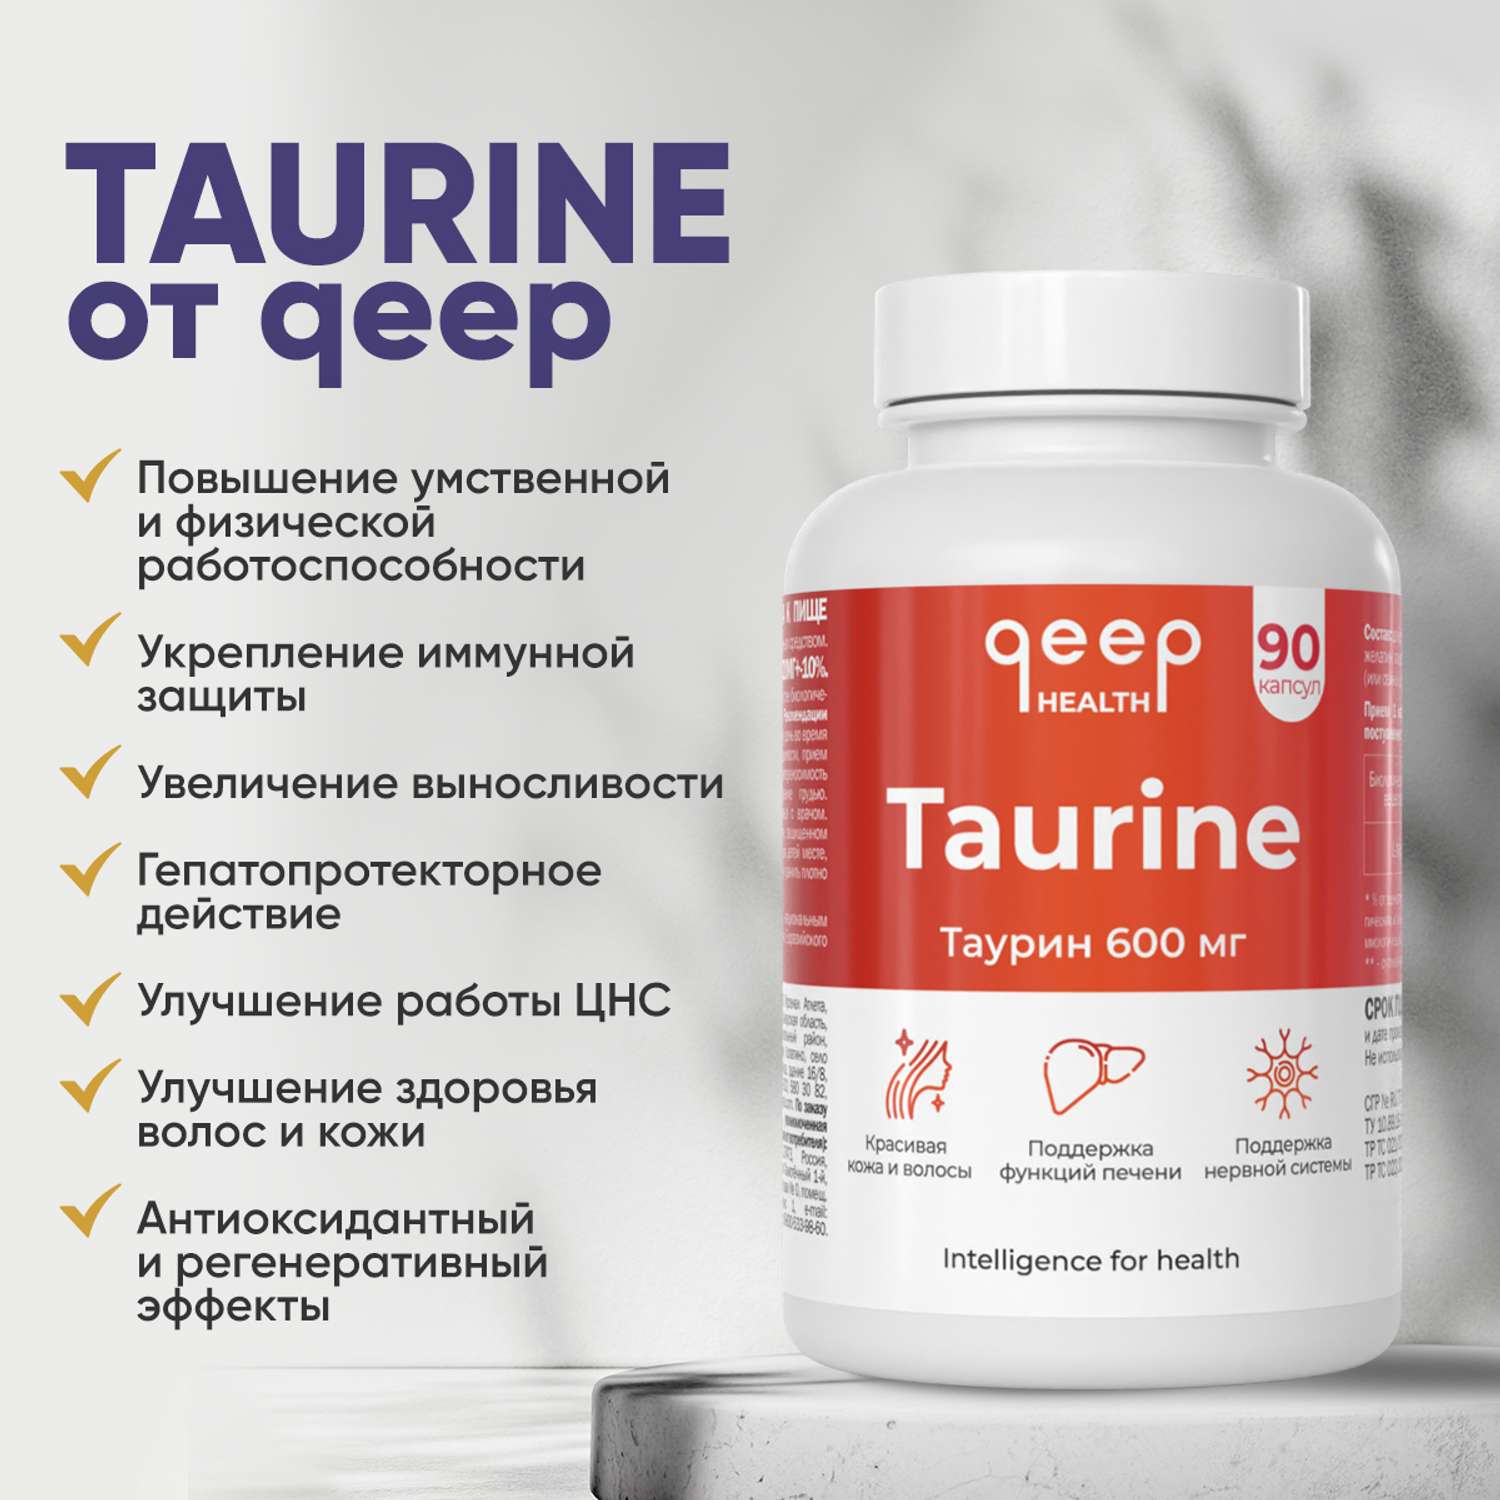 Таурин 600 мг qeep для энергии и бодрости для внимания и памяти для сосудов и сердца - фото 6